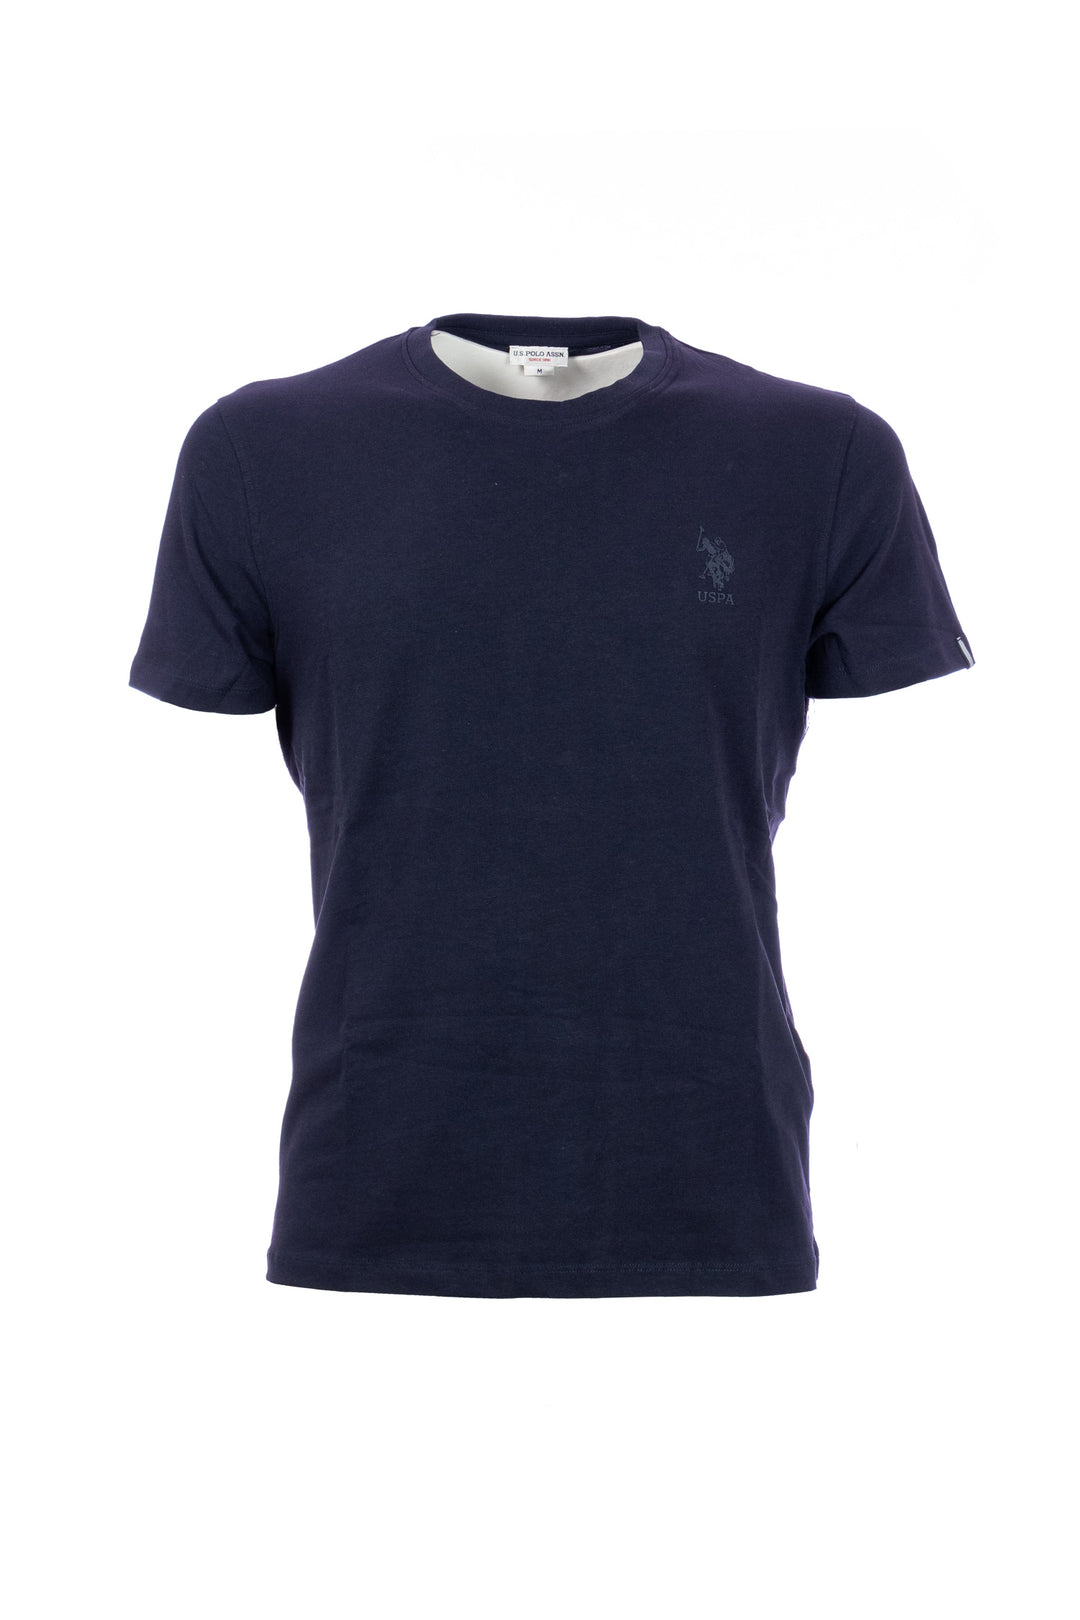 U.S. POLO ASSN. T-shirt blu navy tinta unita in cotone stretch con logo ricamato - Mancinelli 1954